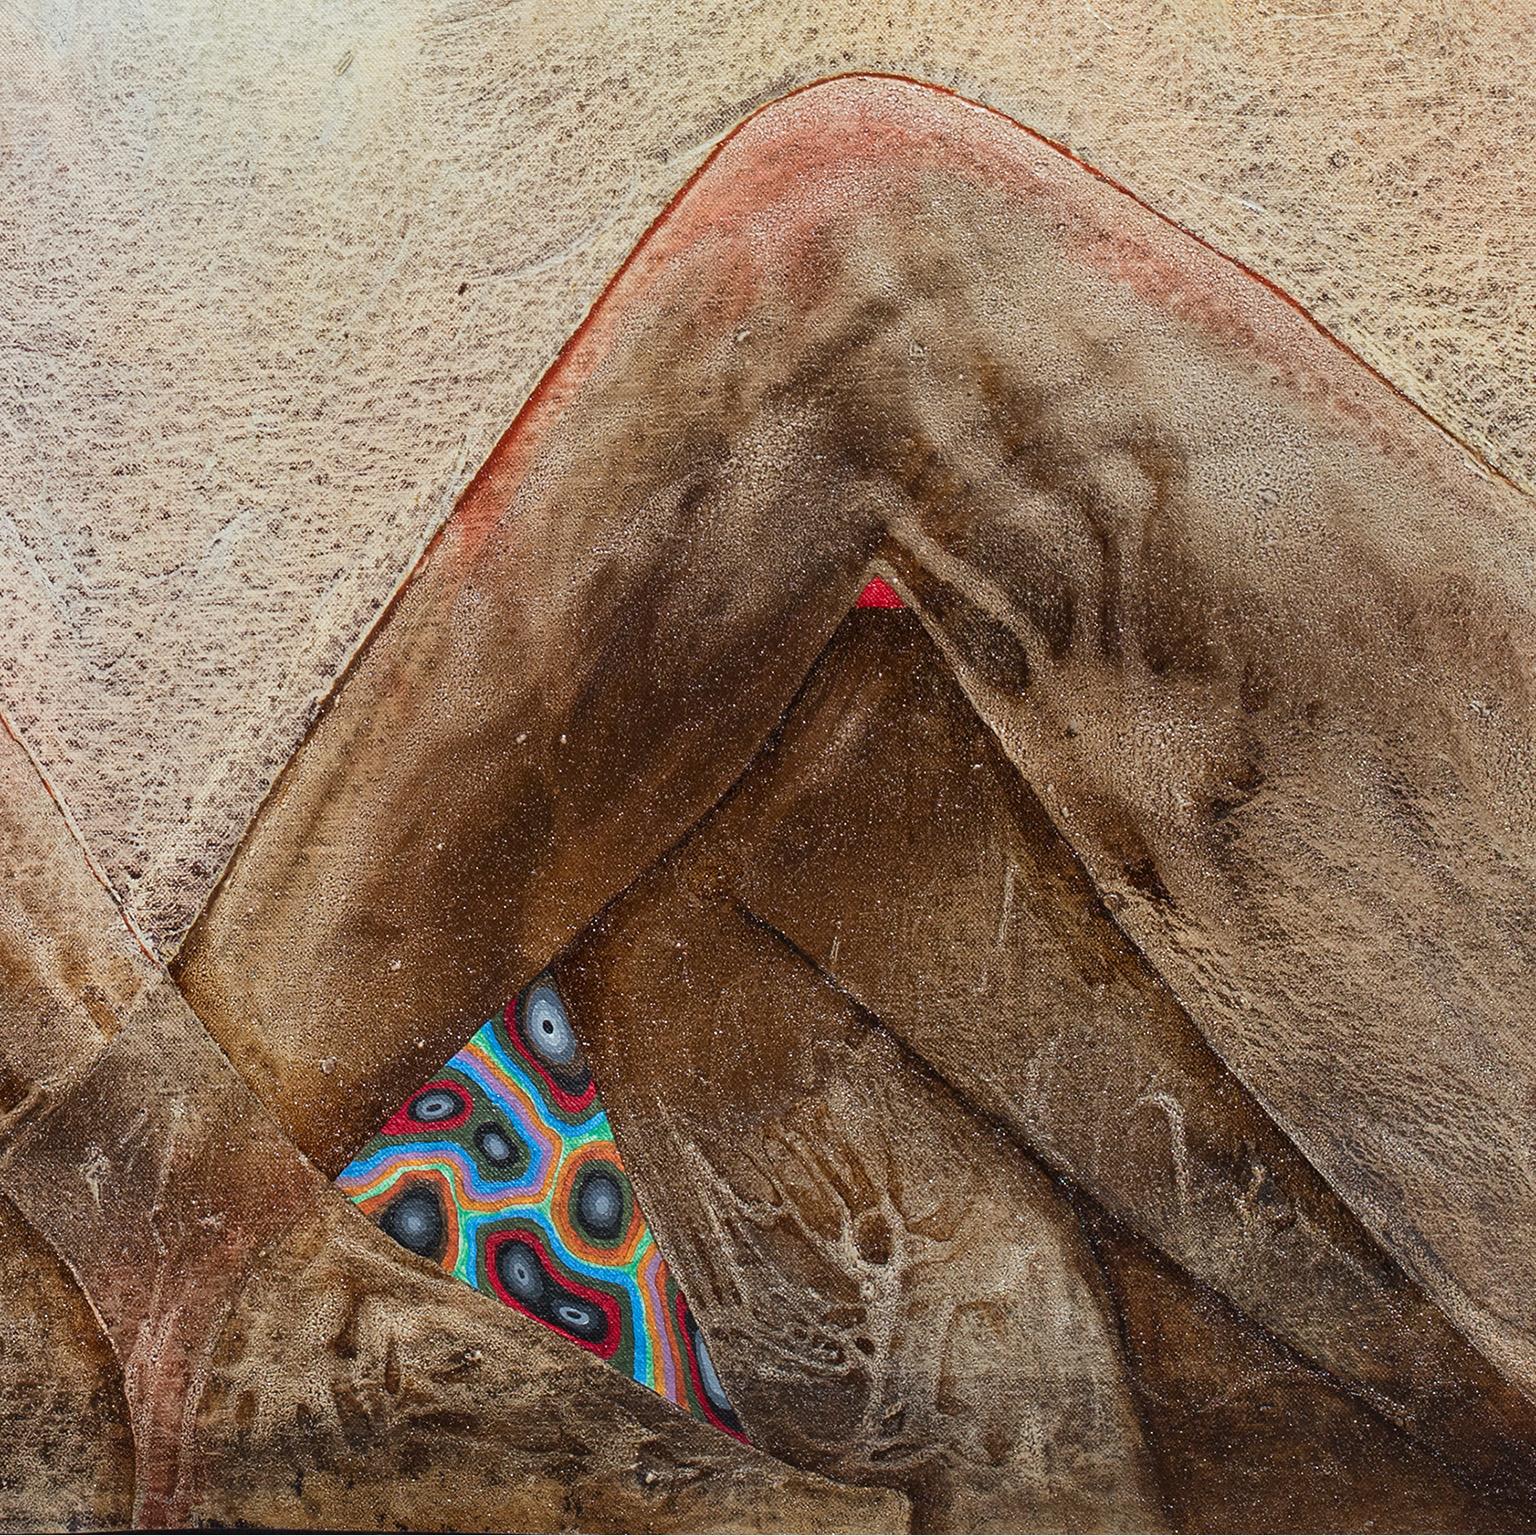 Dieses figurative surrealistische Ölgemälde auf Leinwand misst 52 x 64 Zoll. Die Grundfarben sind Erdtöne mit Akzenten in Rot und Blau. Die Körper von vier weiblichen Akten, die in einer spiegelnden Komposition sitzen, schaffen eine Öffnung über